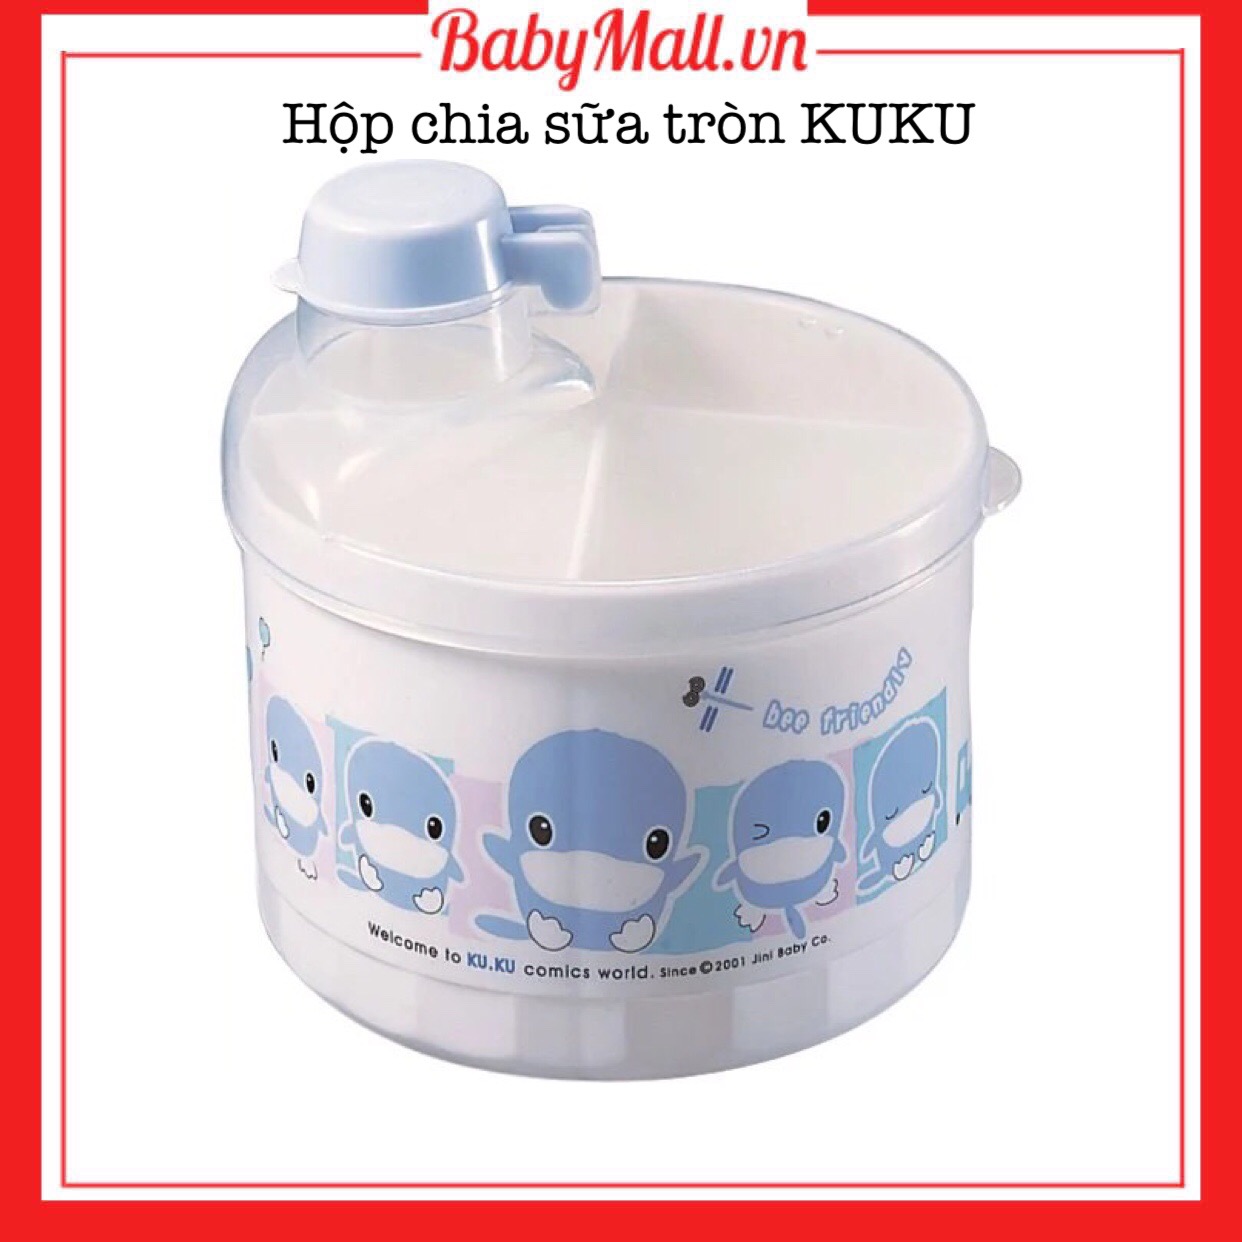 Hộp chia sữa KUKU Babymall.vn